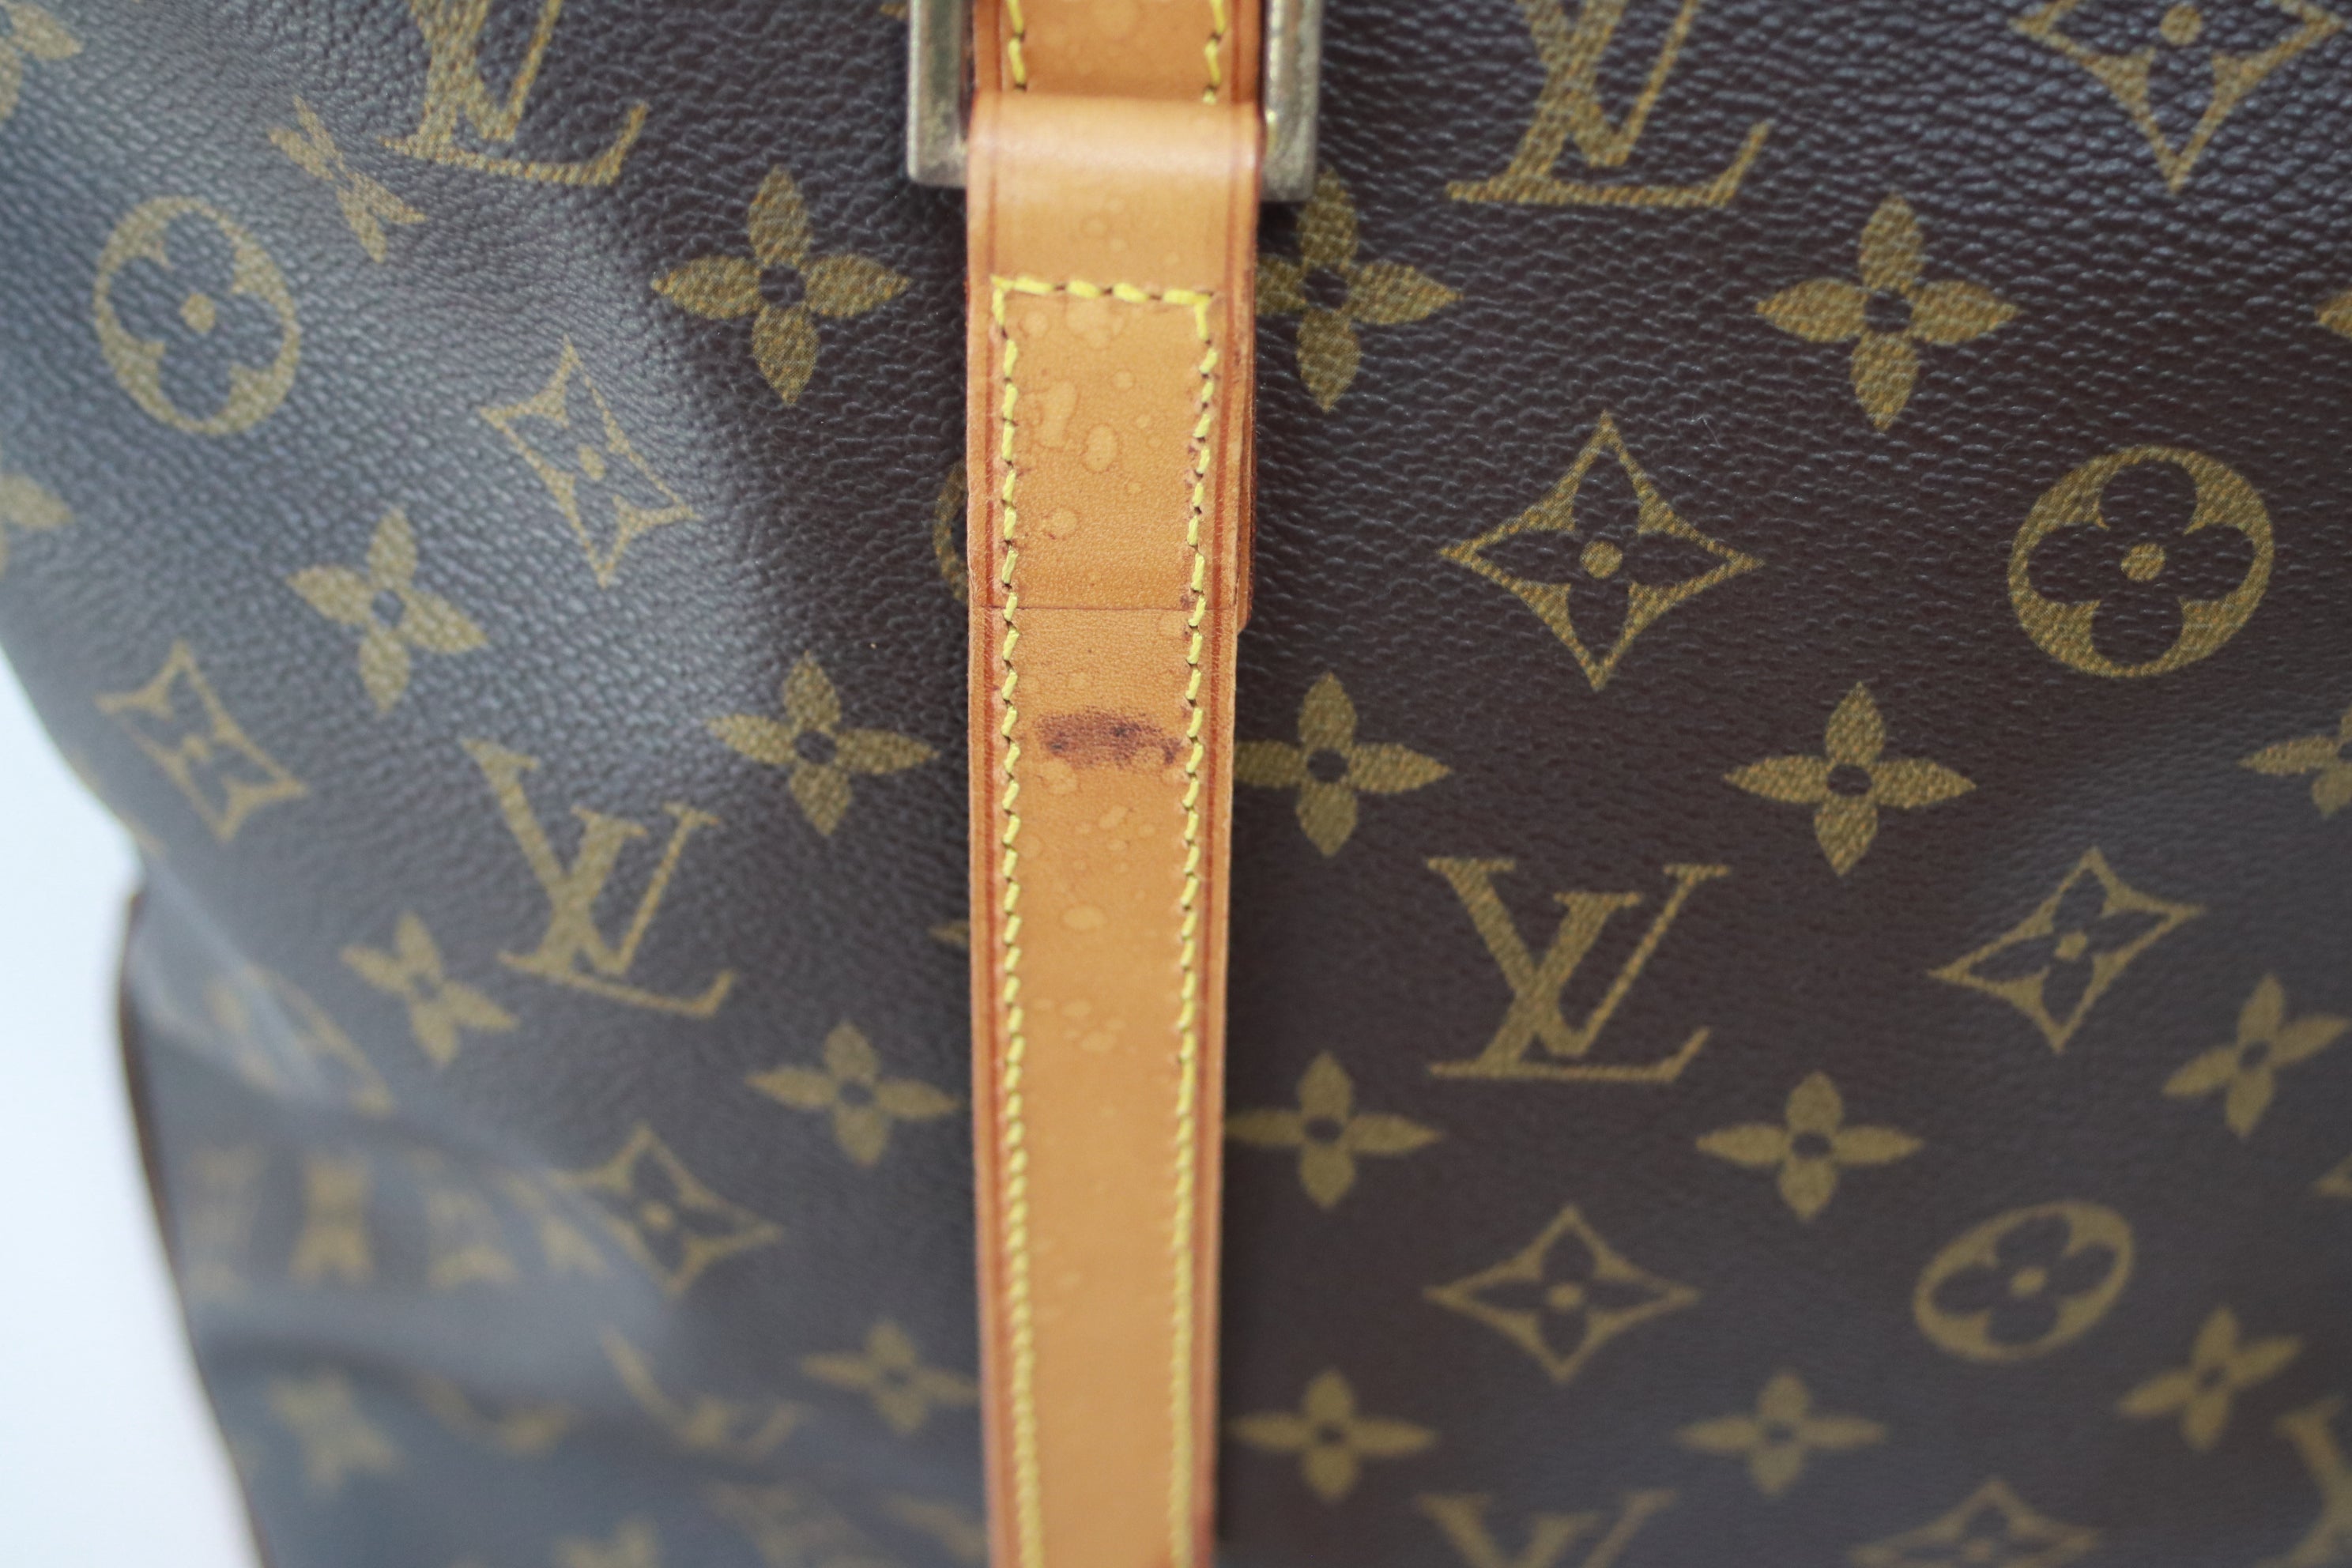 Louis Vuitton Cabas Mezzo Shoulder Bag Used (7169)